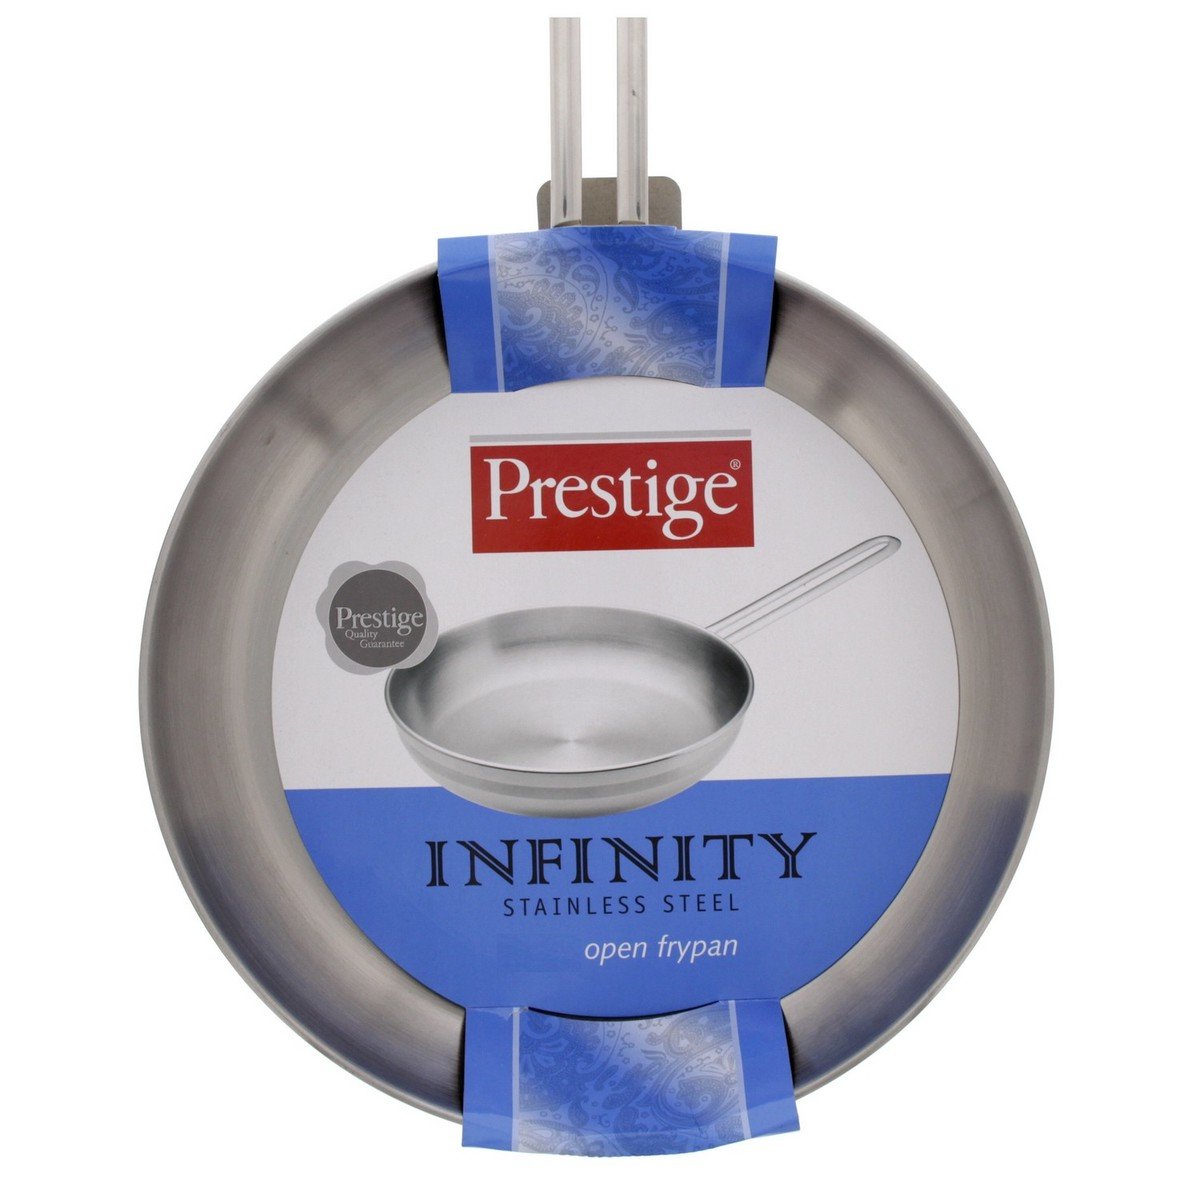 Prestige Infinity Stainless Steel Fry Pan, 20 cm, 77366